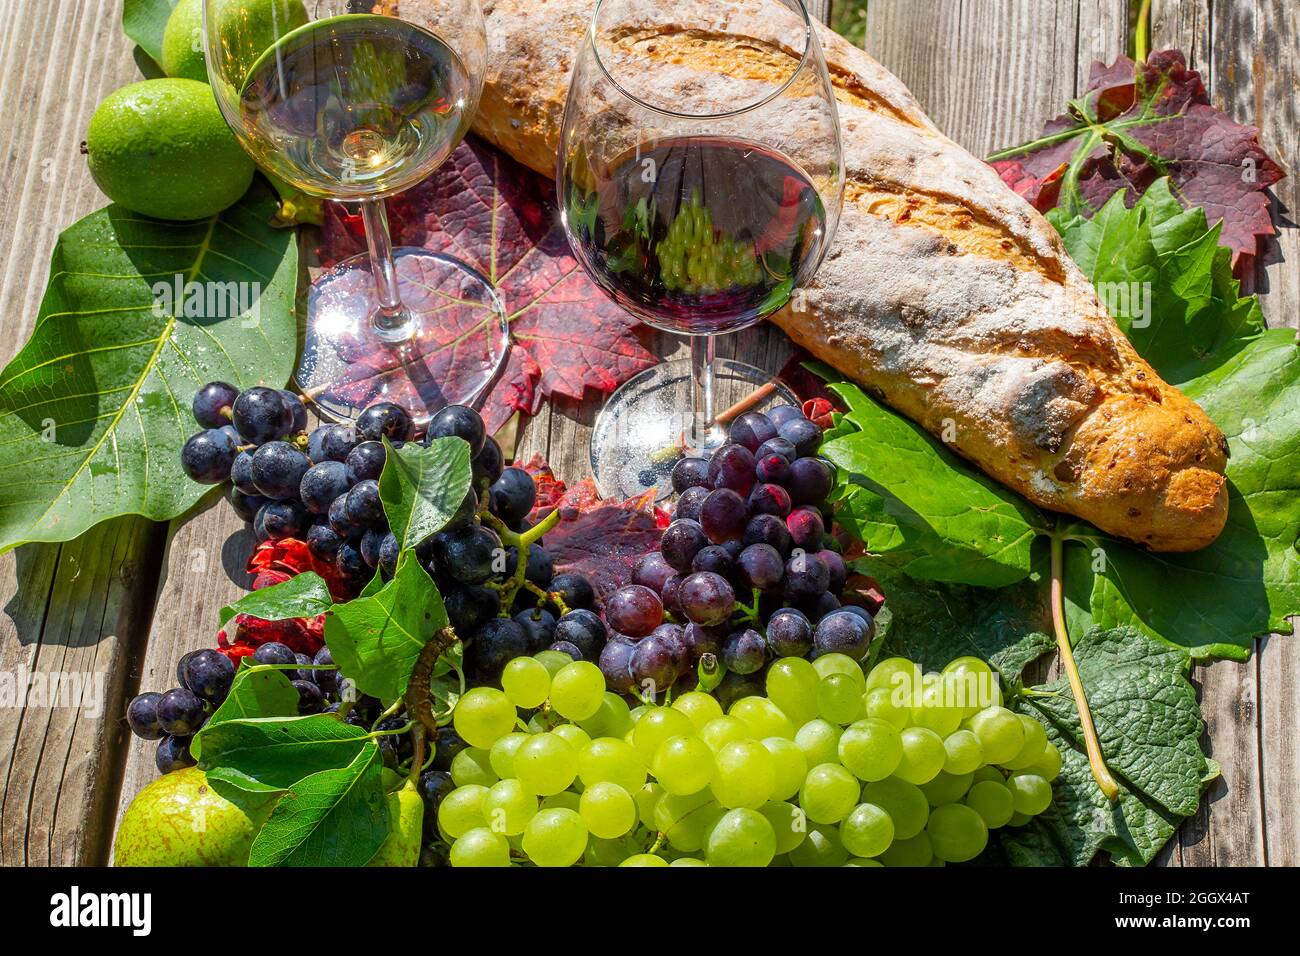 Symbolbild Weinlese: Reife Weintrauben mit Weingläsern dekoriert auf einem Holztisch Stock Photo